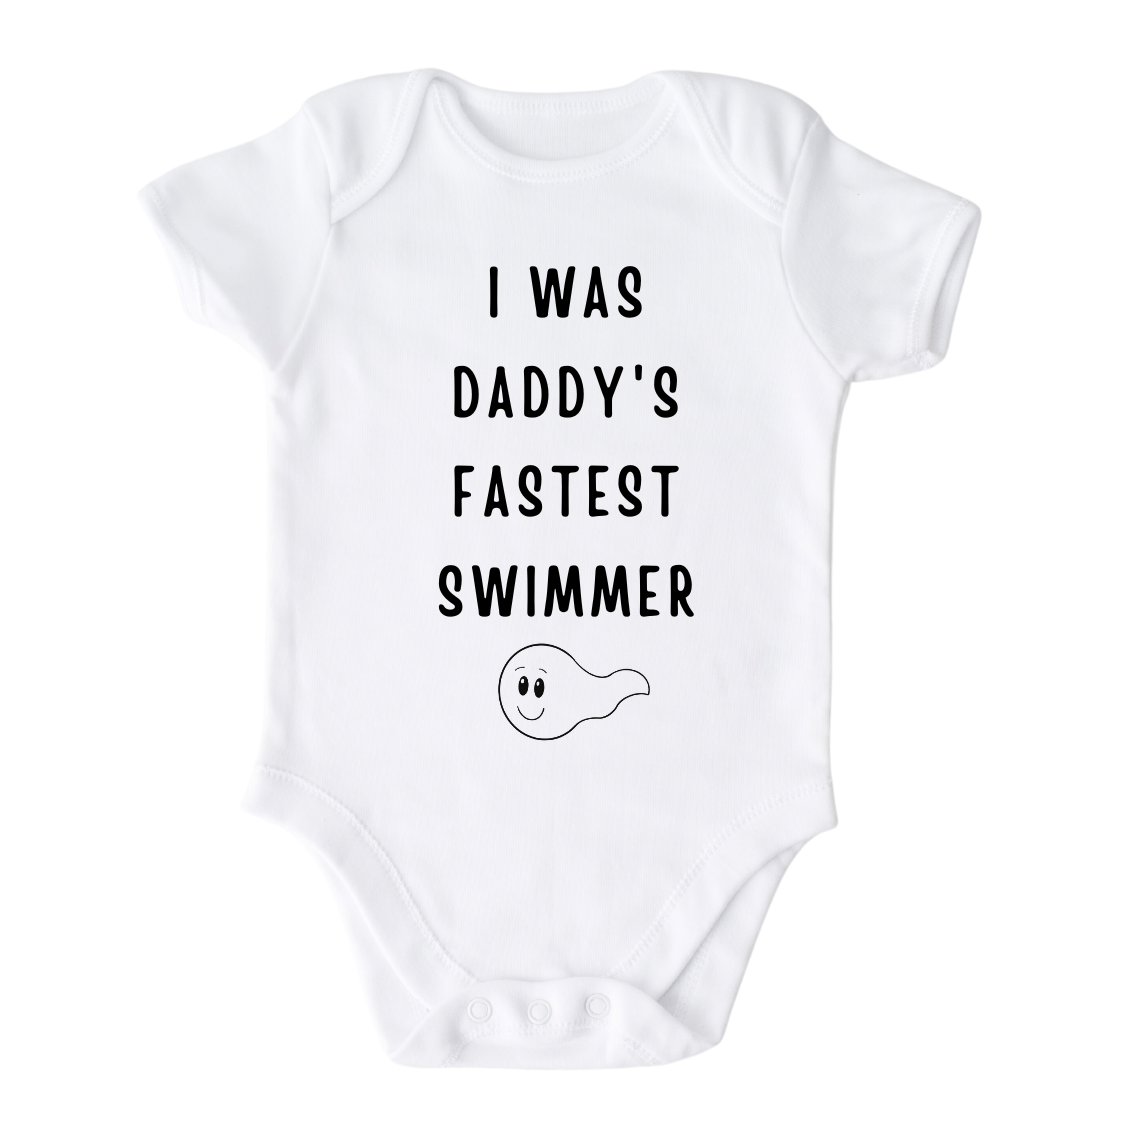 Buy Fastest Swimmer Baby Onesie